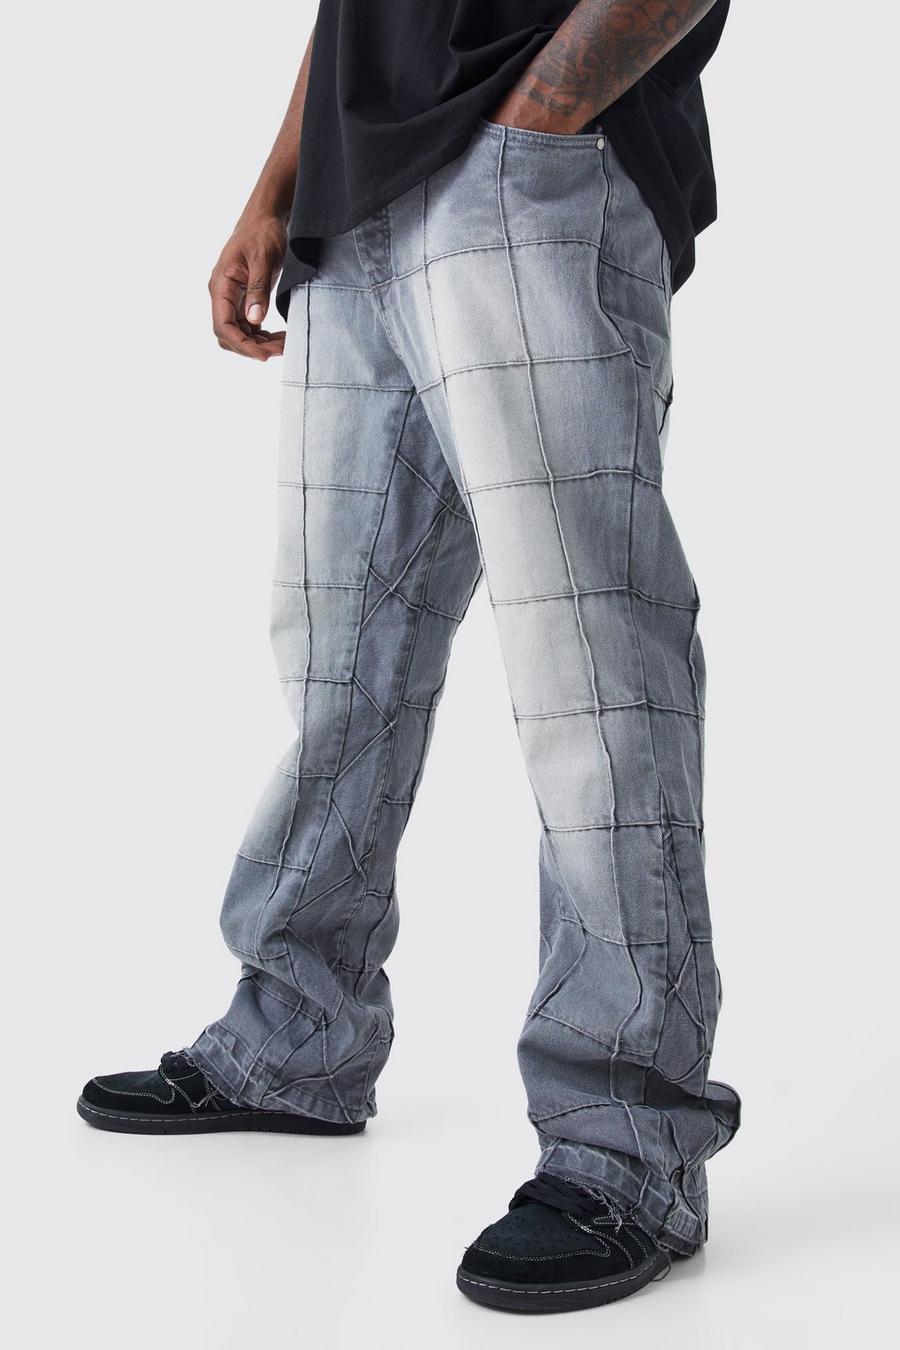 Jeans Plus Size Slim Fit in denim rigido con pannelli a zampa e inserti, Mid grey